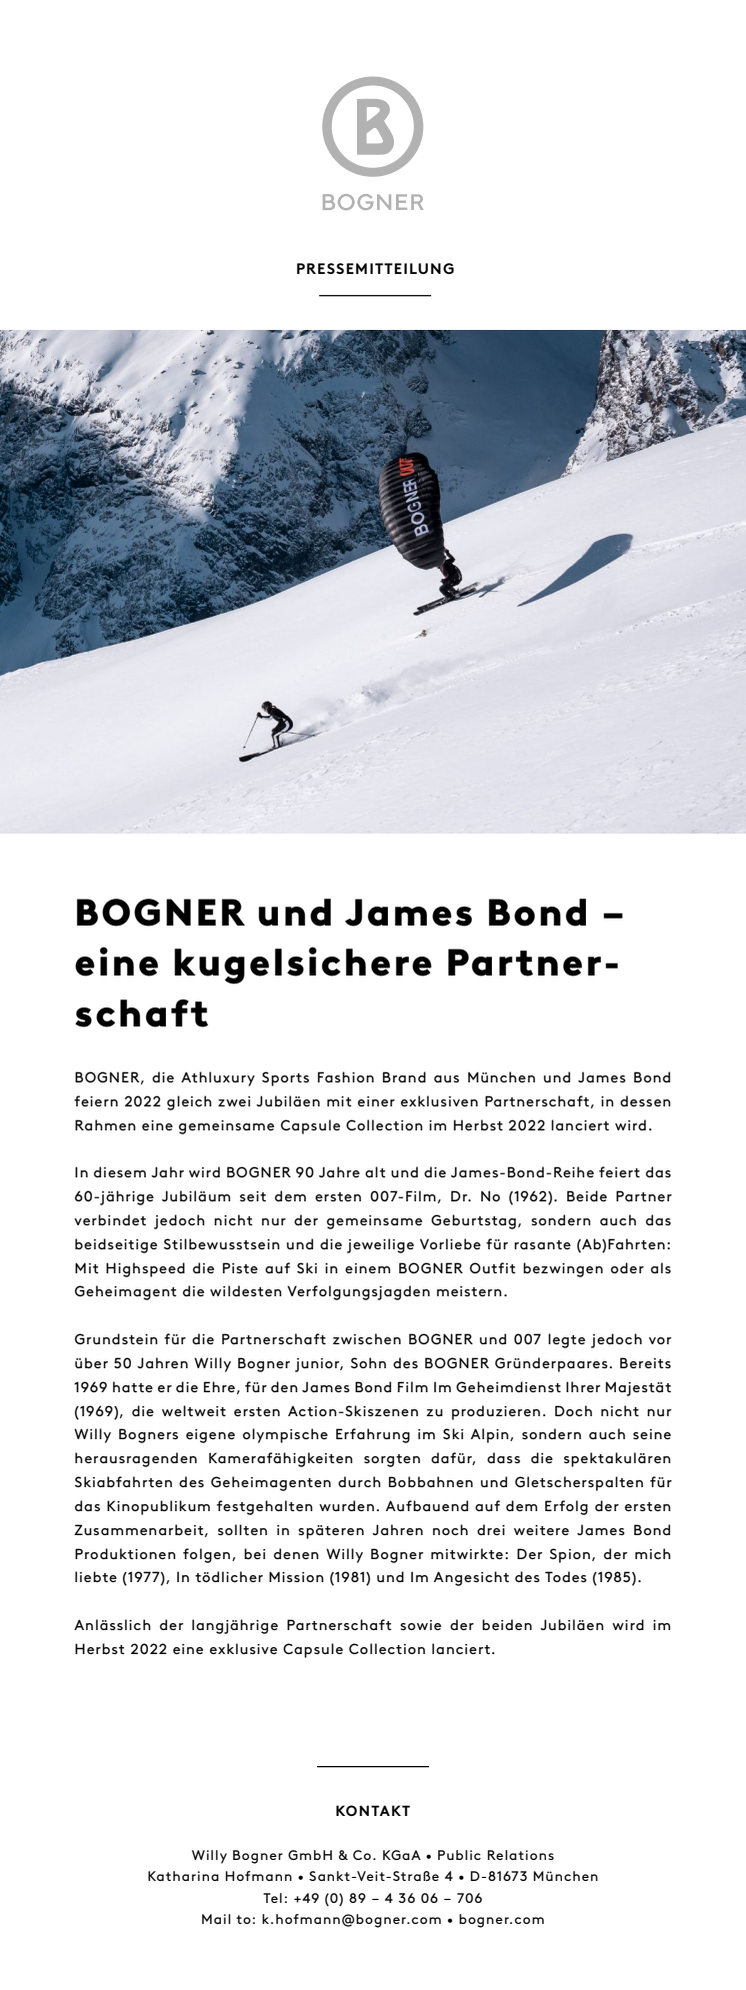 Pressemitteilung_BOGNER und James Bond_eine kugelsichere Partnerschaft.pdf